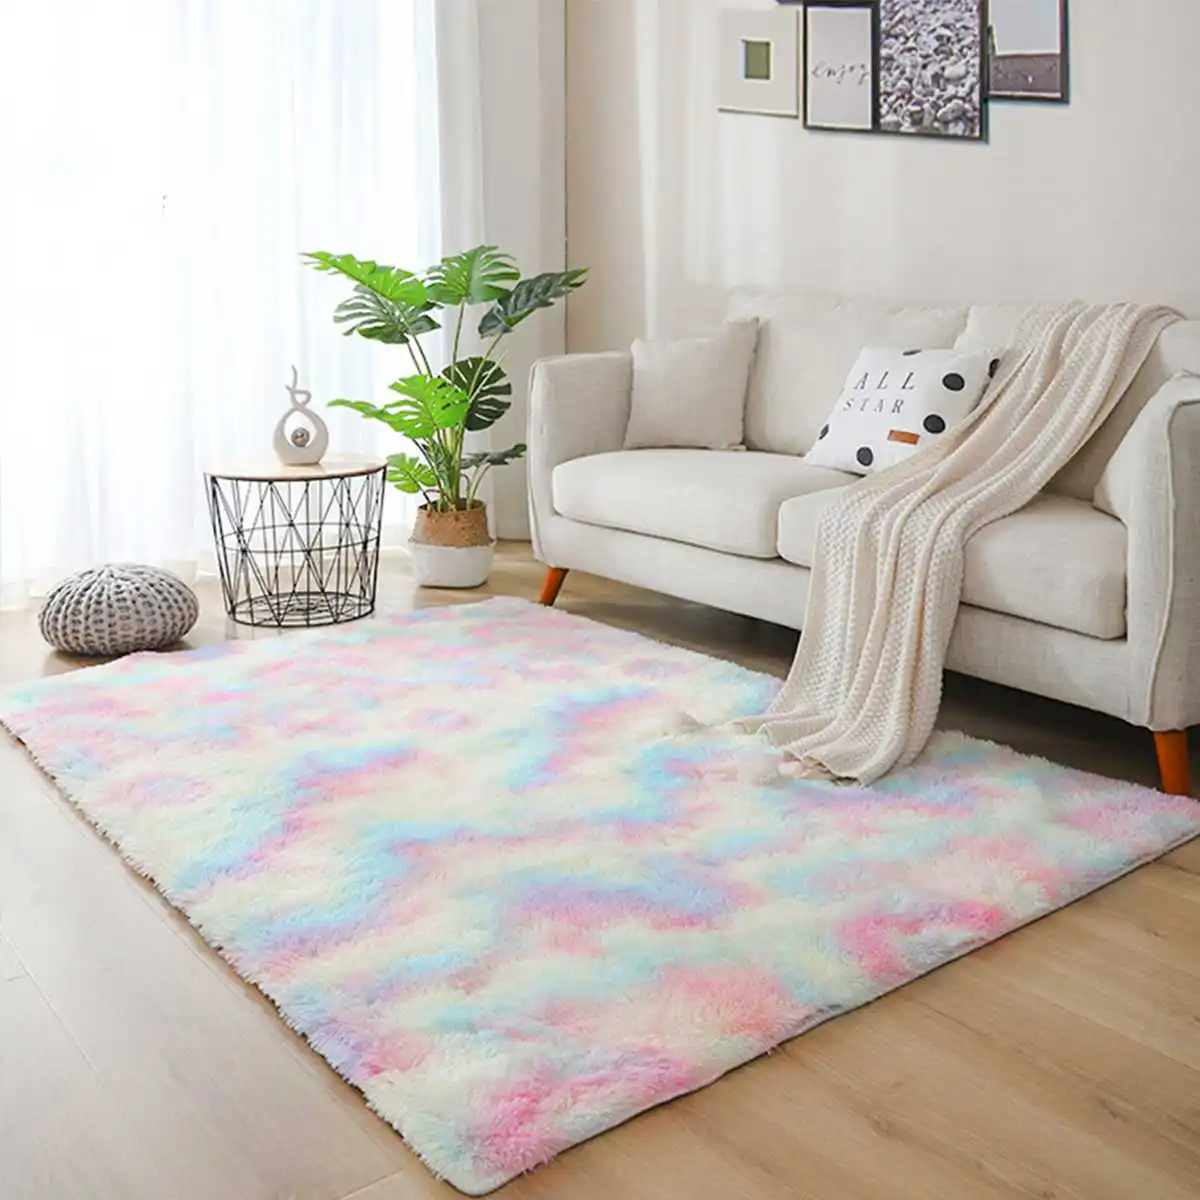 

Пушистый Противоскользящий коврик радужного цвета для гостиной, спальни, дивана, стула, коврики, плюшевый крашеный ковер для детской комнат...